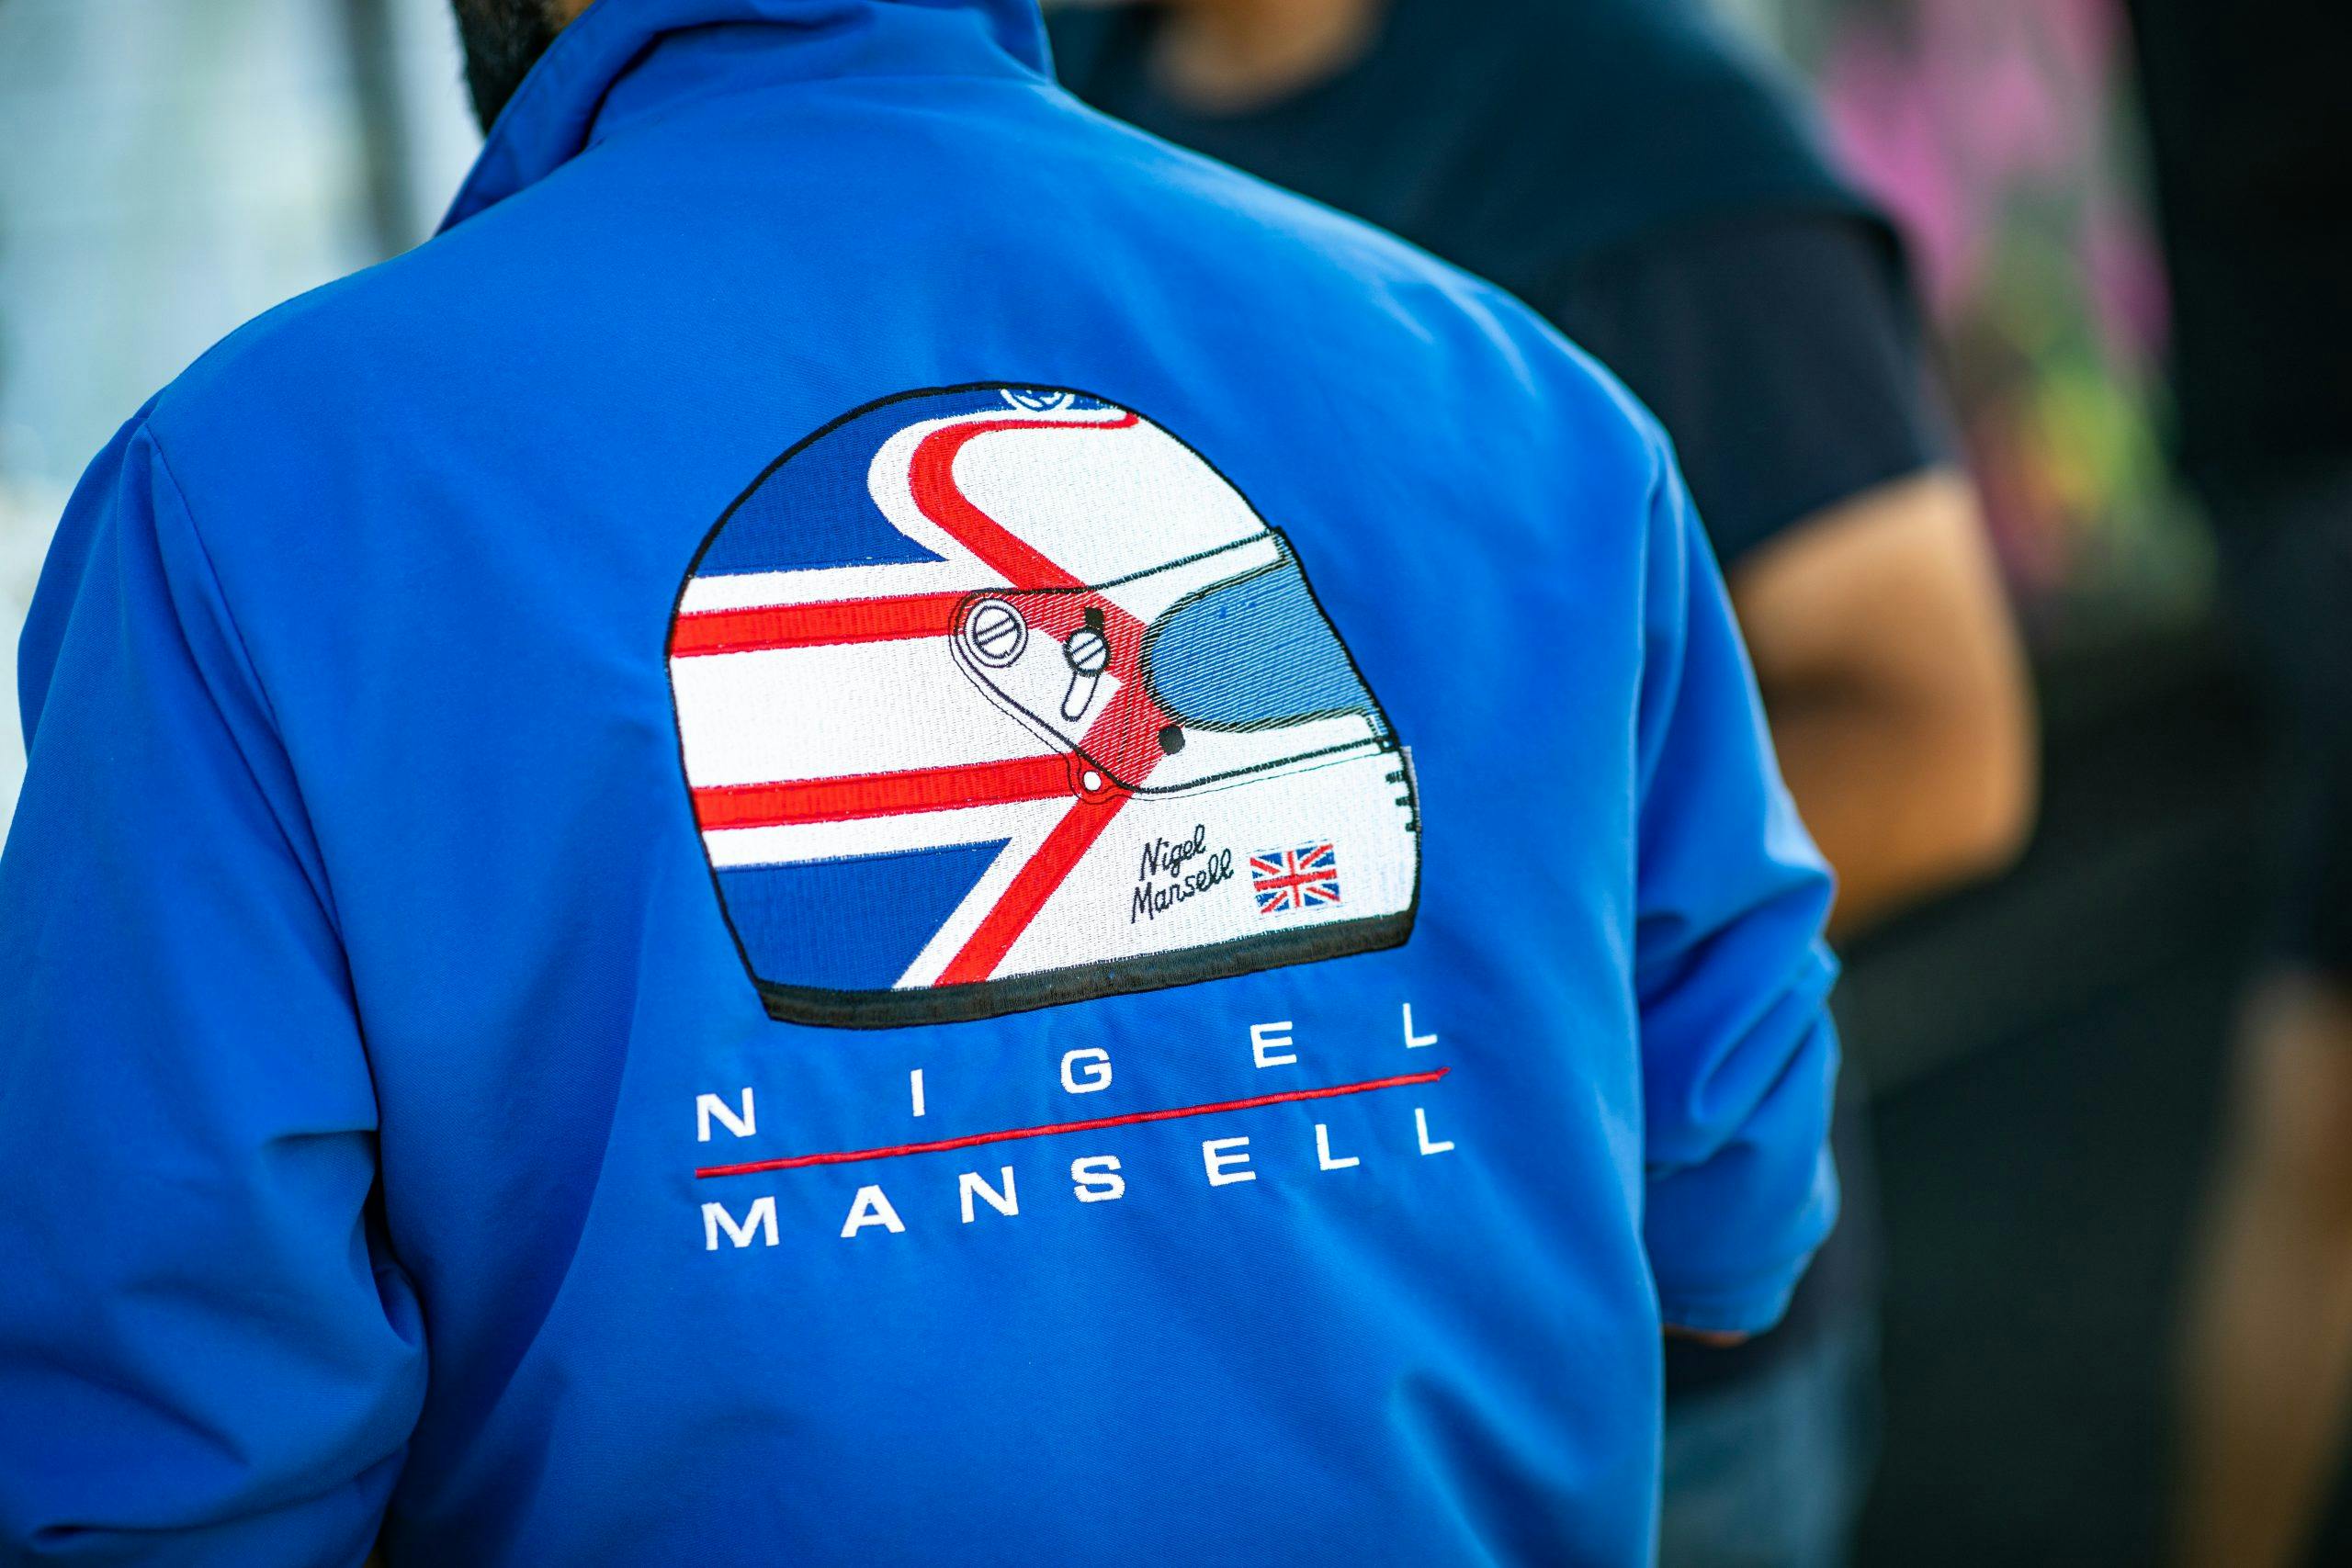 Radwood event Nigel Mansell vintage jacket